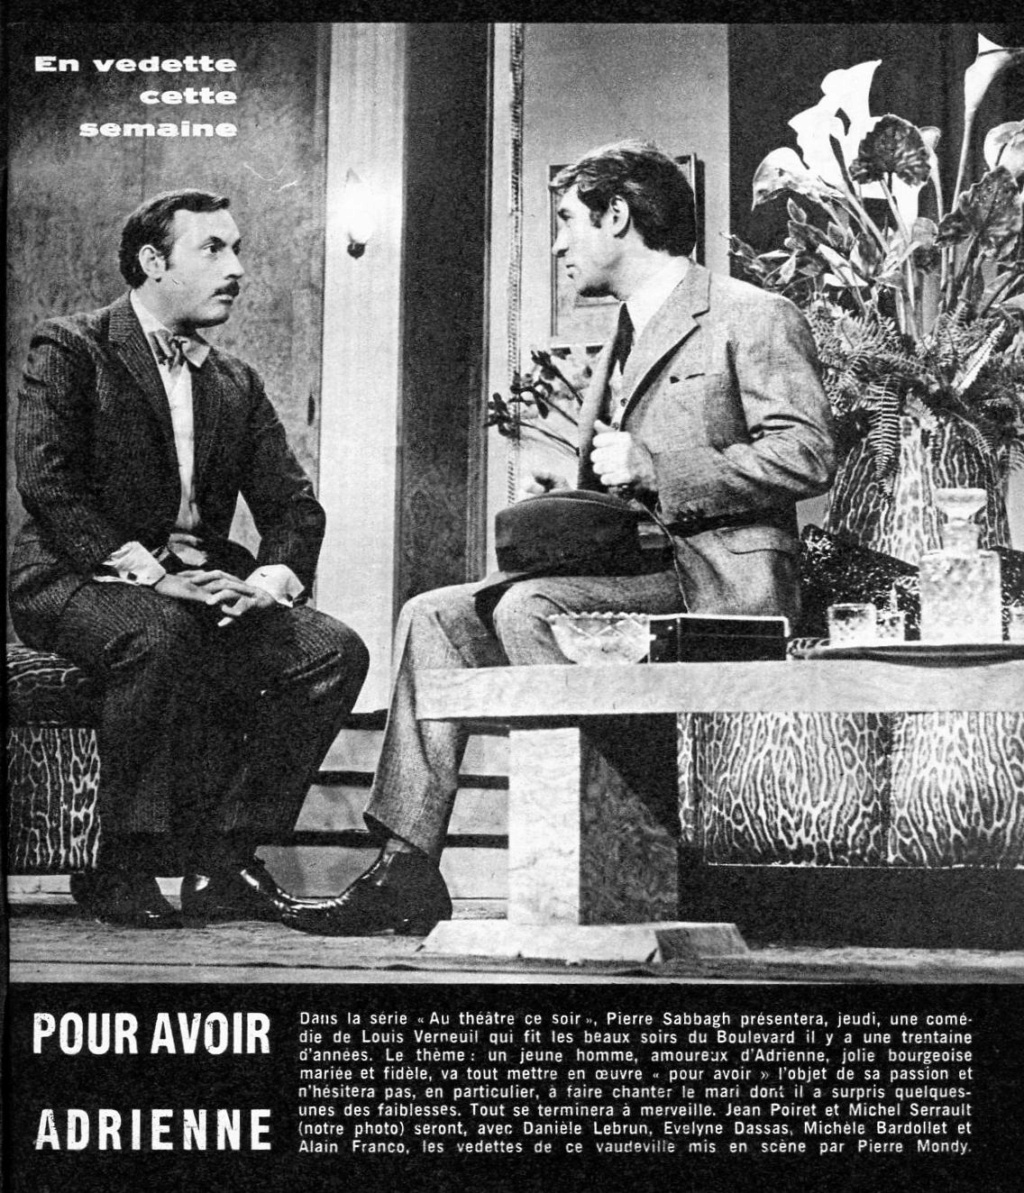 20 juillet 1967: Au théâtre ce soir - POUR AVOIR ADRIENNE 0832